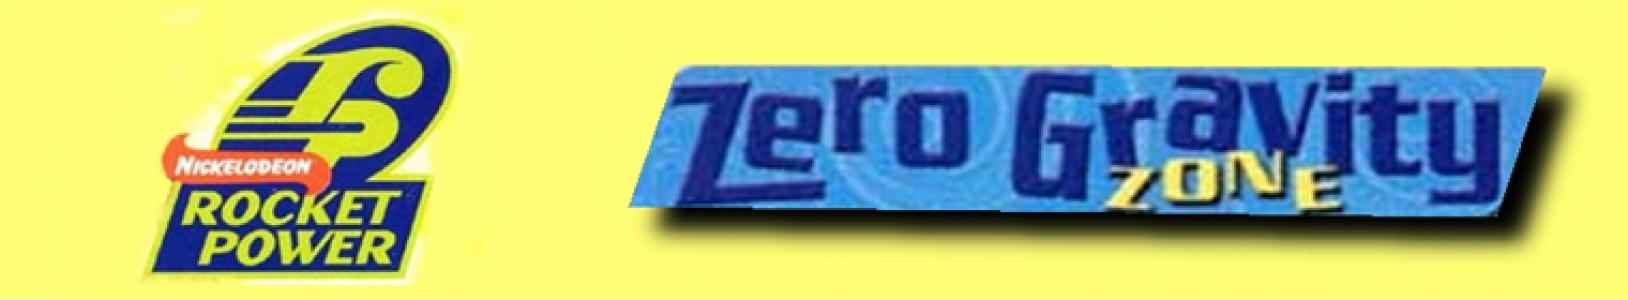 Nickelodeon Rocket Power: Zero Gravity Zone banner